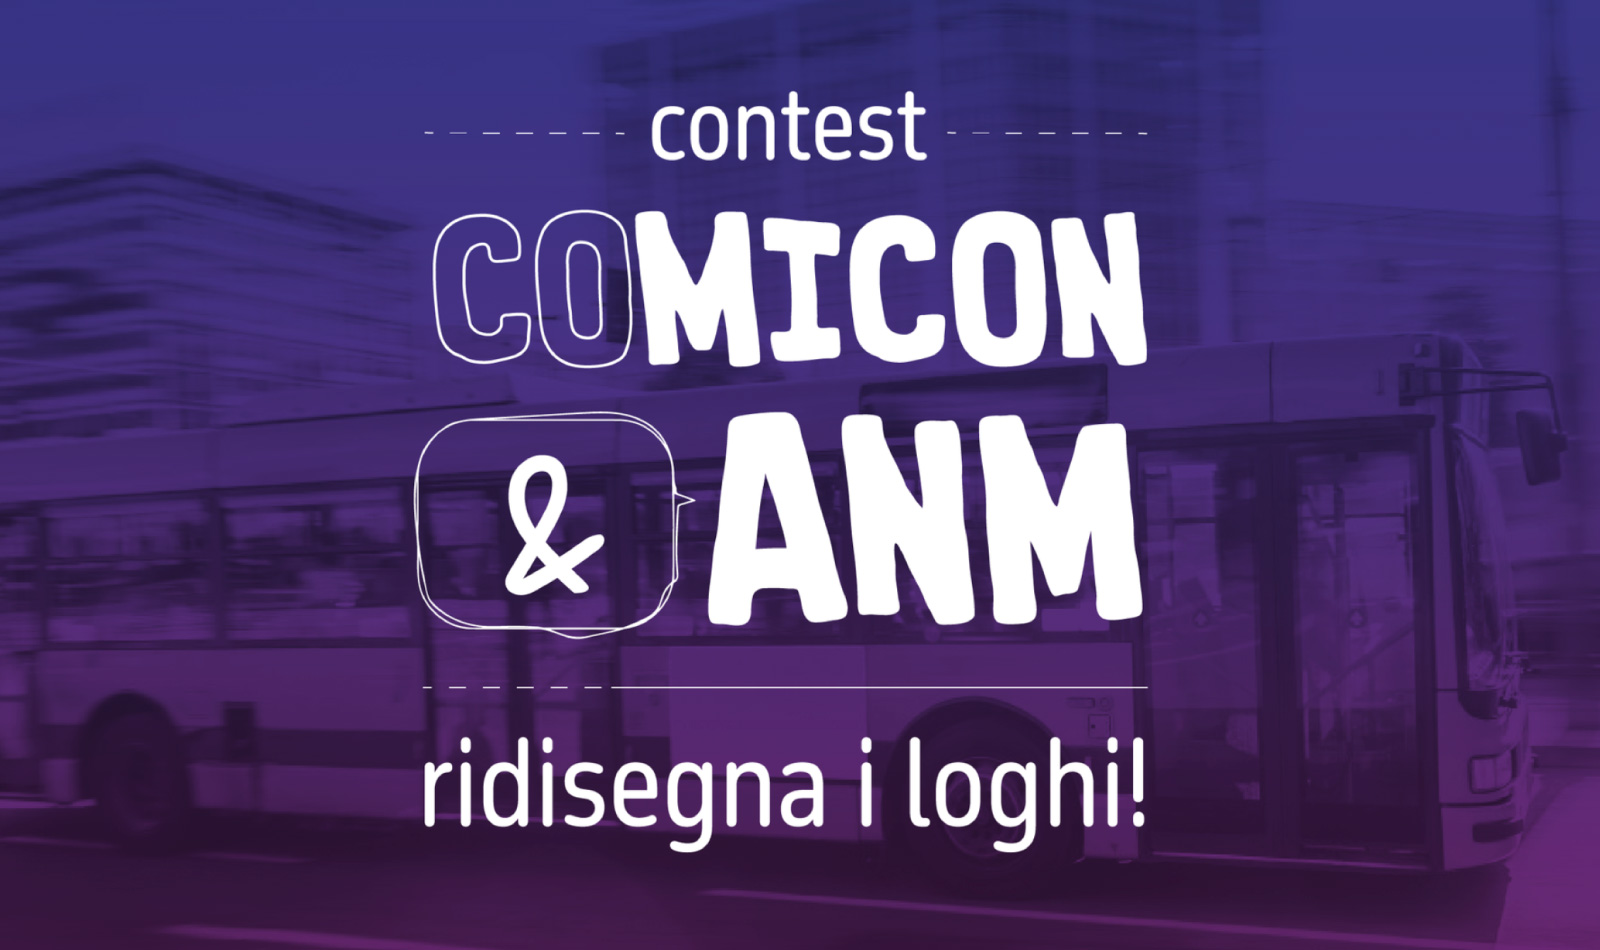 contest-comicon-anm